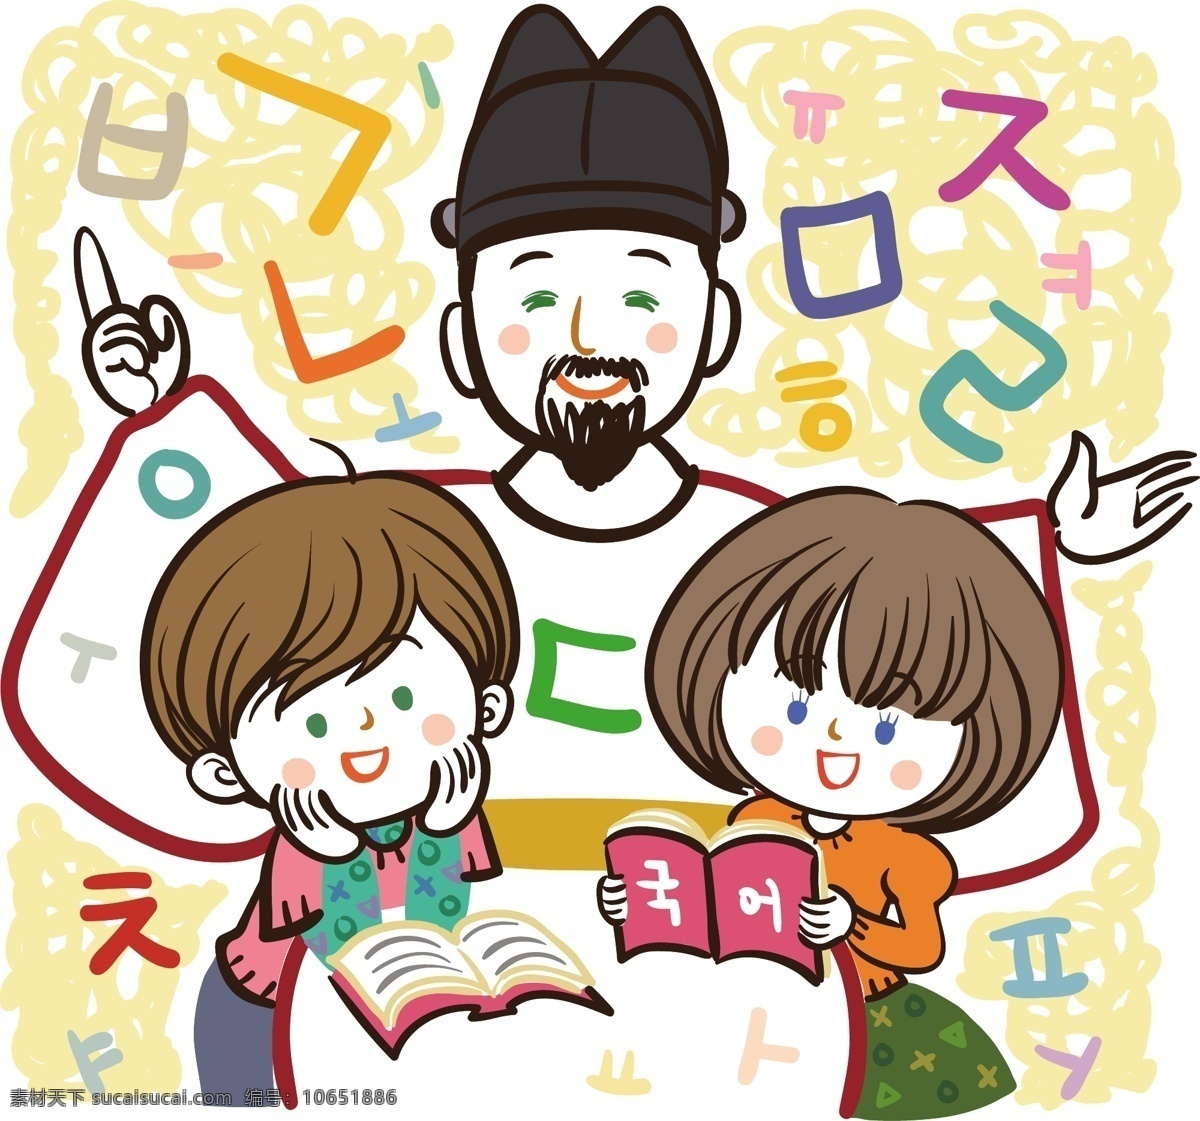 最新 韩国 矢量 卡通 儿童矢量图 风景cdr 矢量卡通图 矢量情侣图 矢量图免费